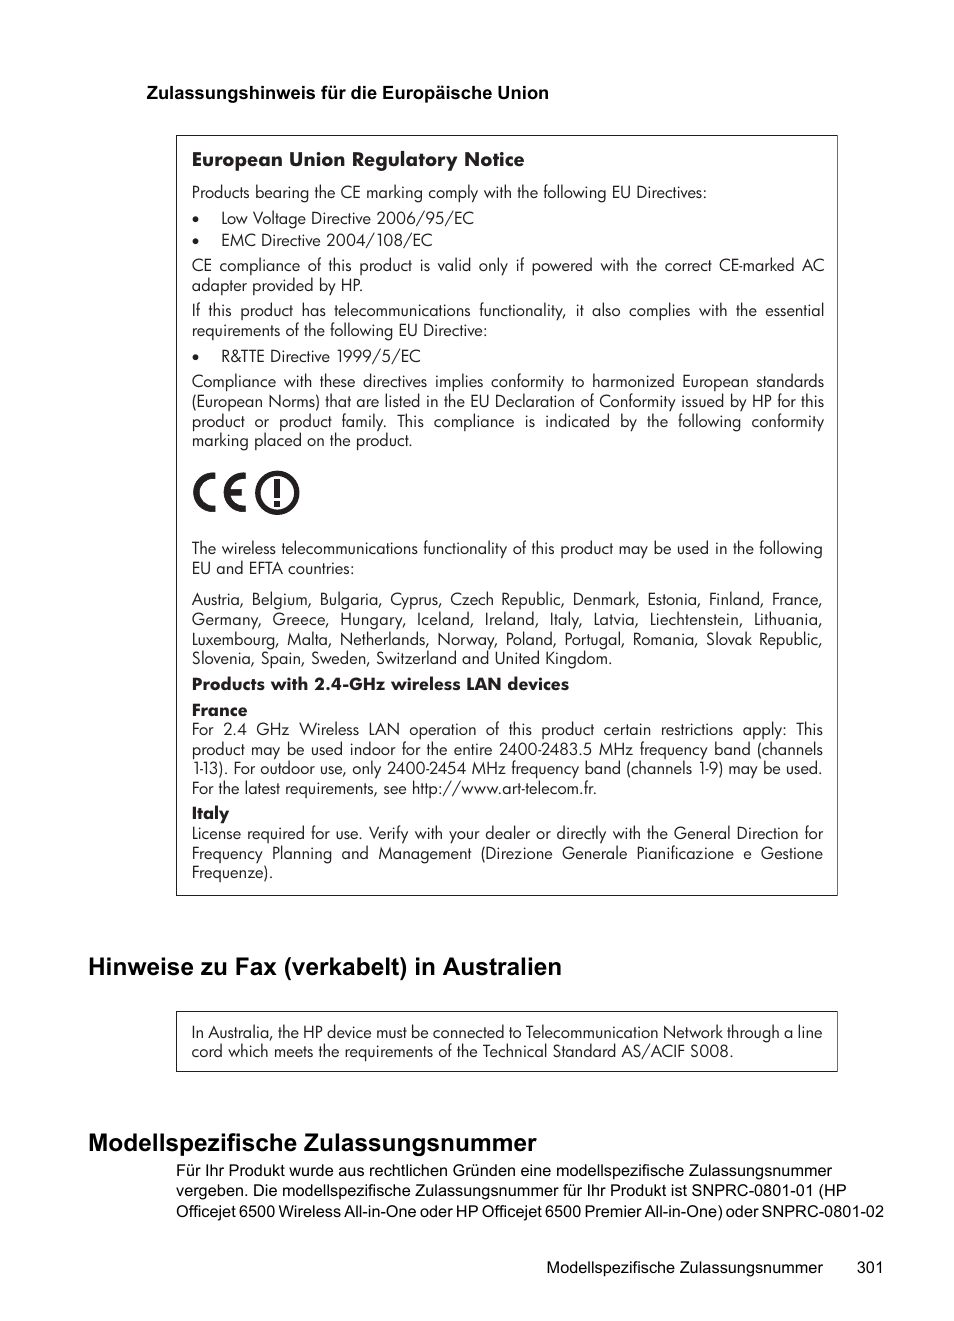 Zulassungshinweis für die europäische union, Hinweise zu fax (verkabelt) in australien, Modellspezifische zulassungsnummer | HP Officejet 6500 Benutzerhandbuch | Seite 305 / 328